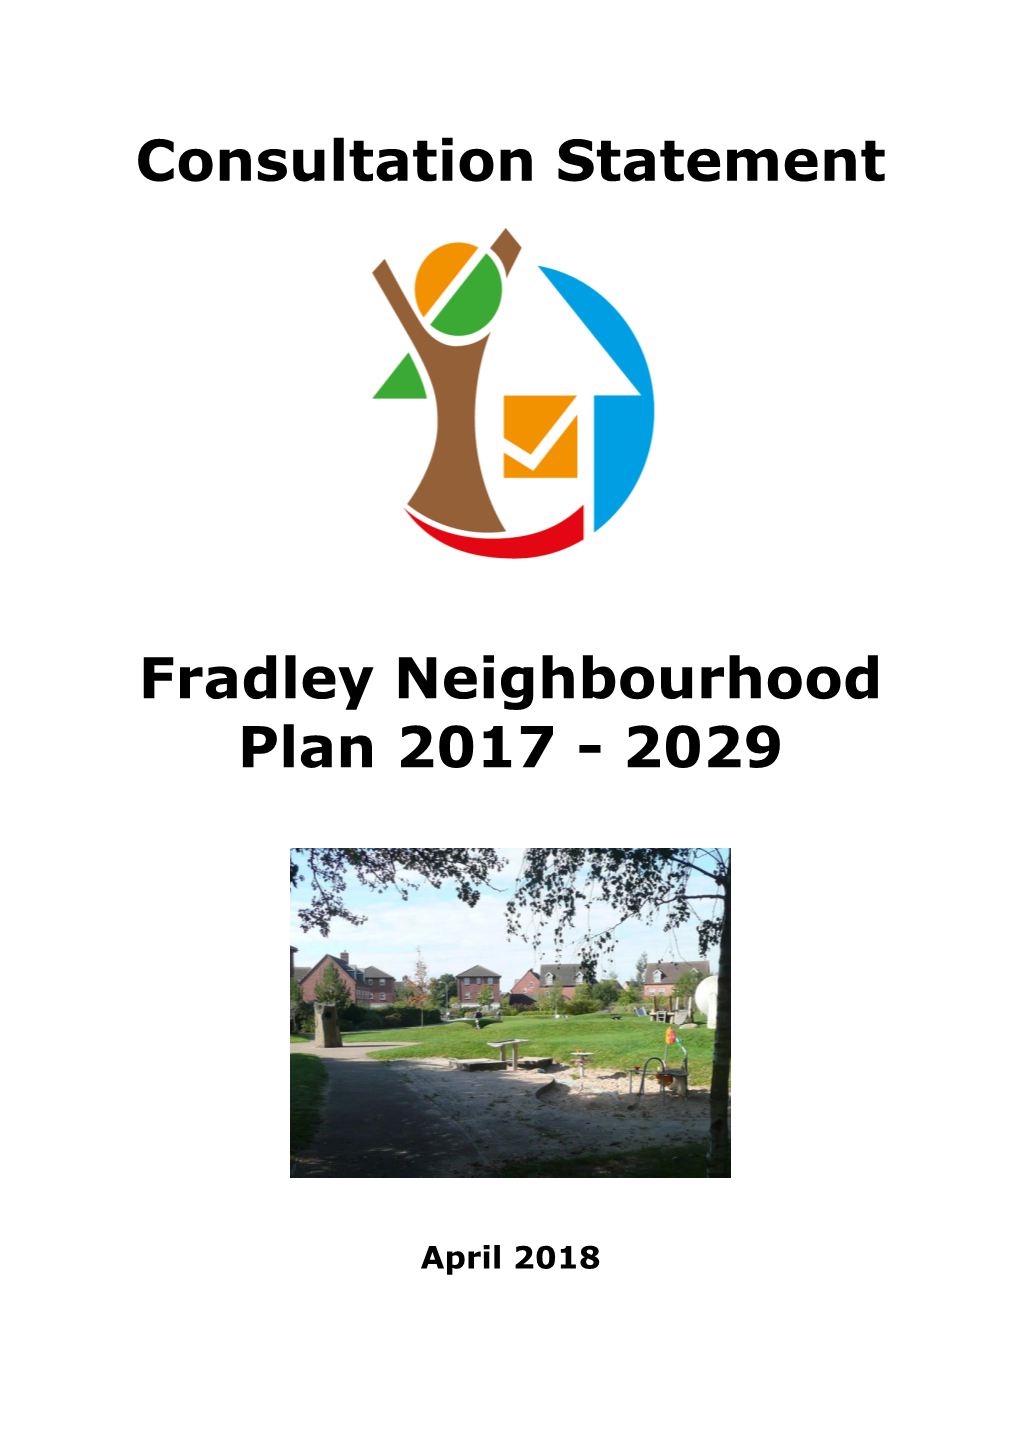 Fradley Neighbourhood Plan 2017 - 2029